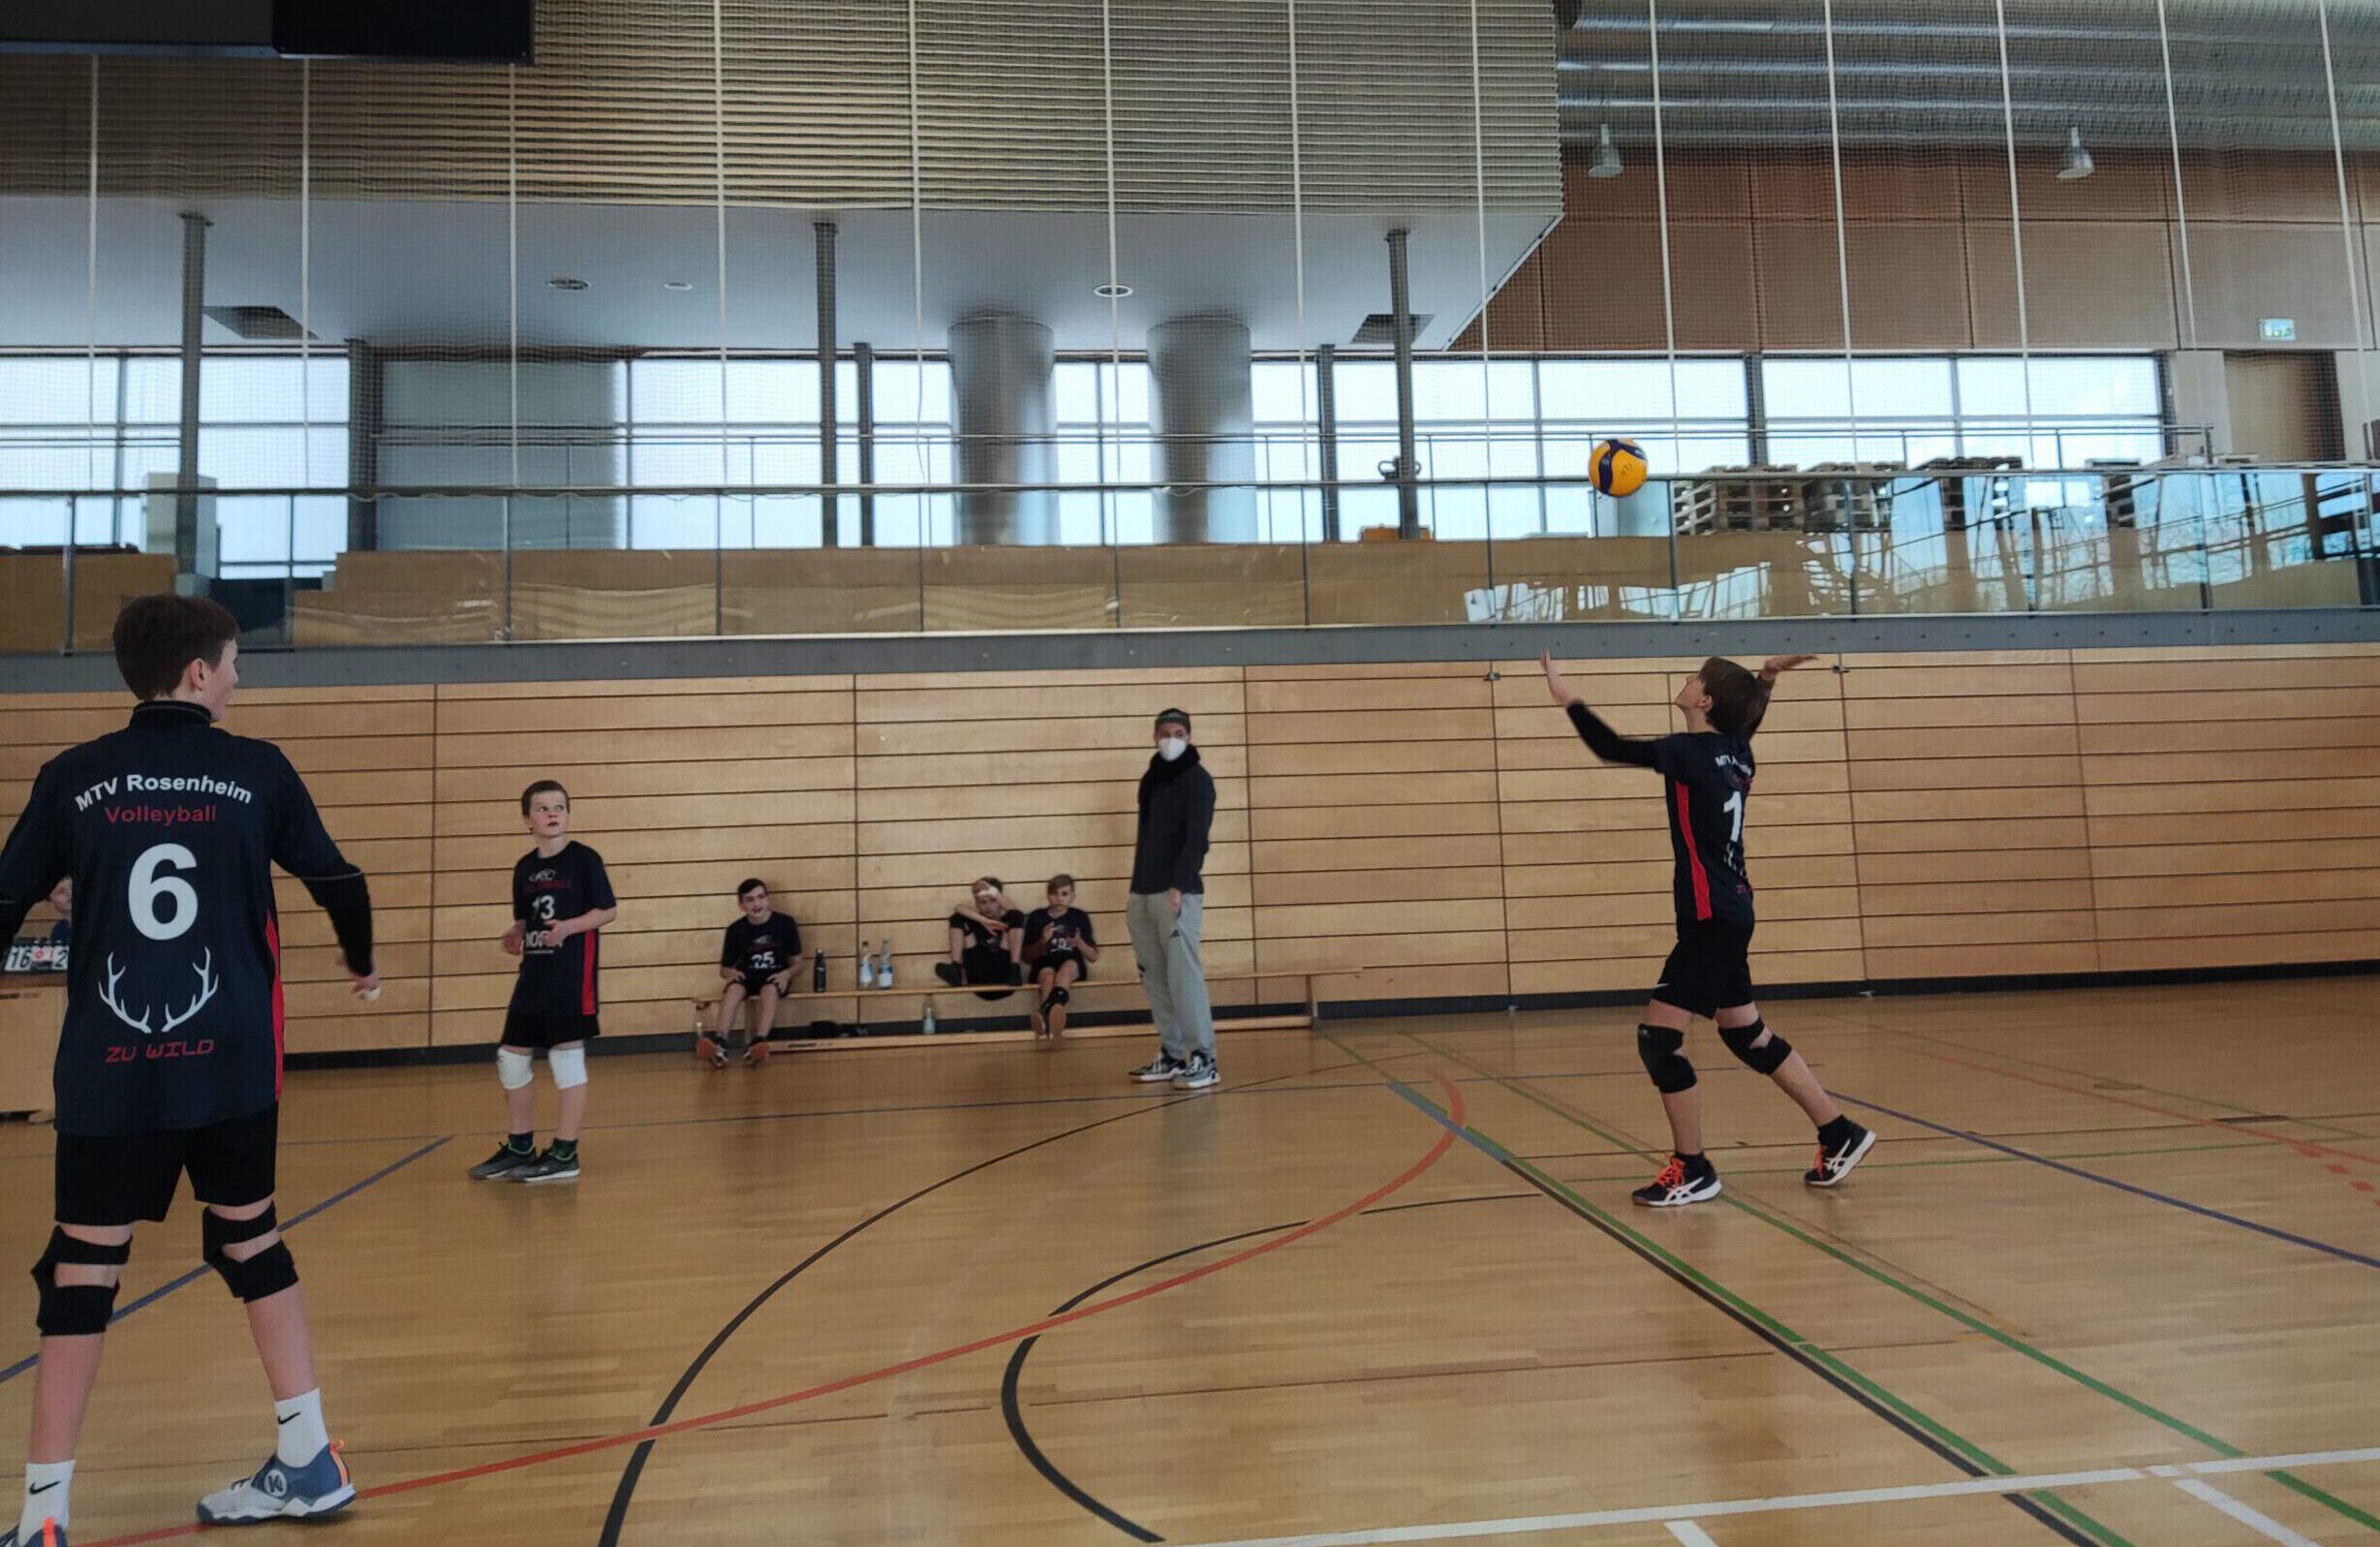 https://www.volleyball-rosenheim.de/wp-content/uploads/2022/02/Volleyball_Rosenheim_U15_Turnier_3-scaled-e1644243049419.jpg